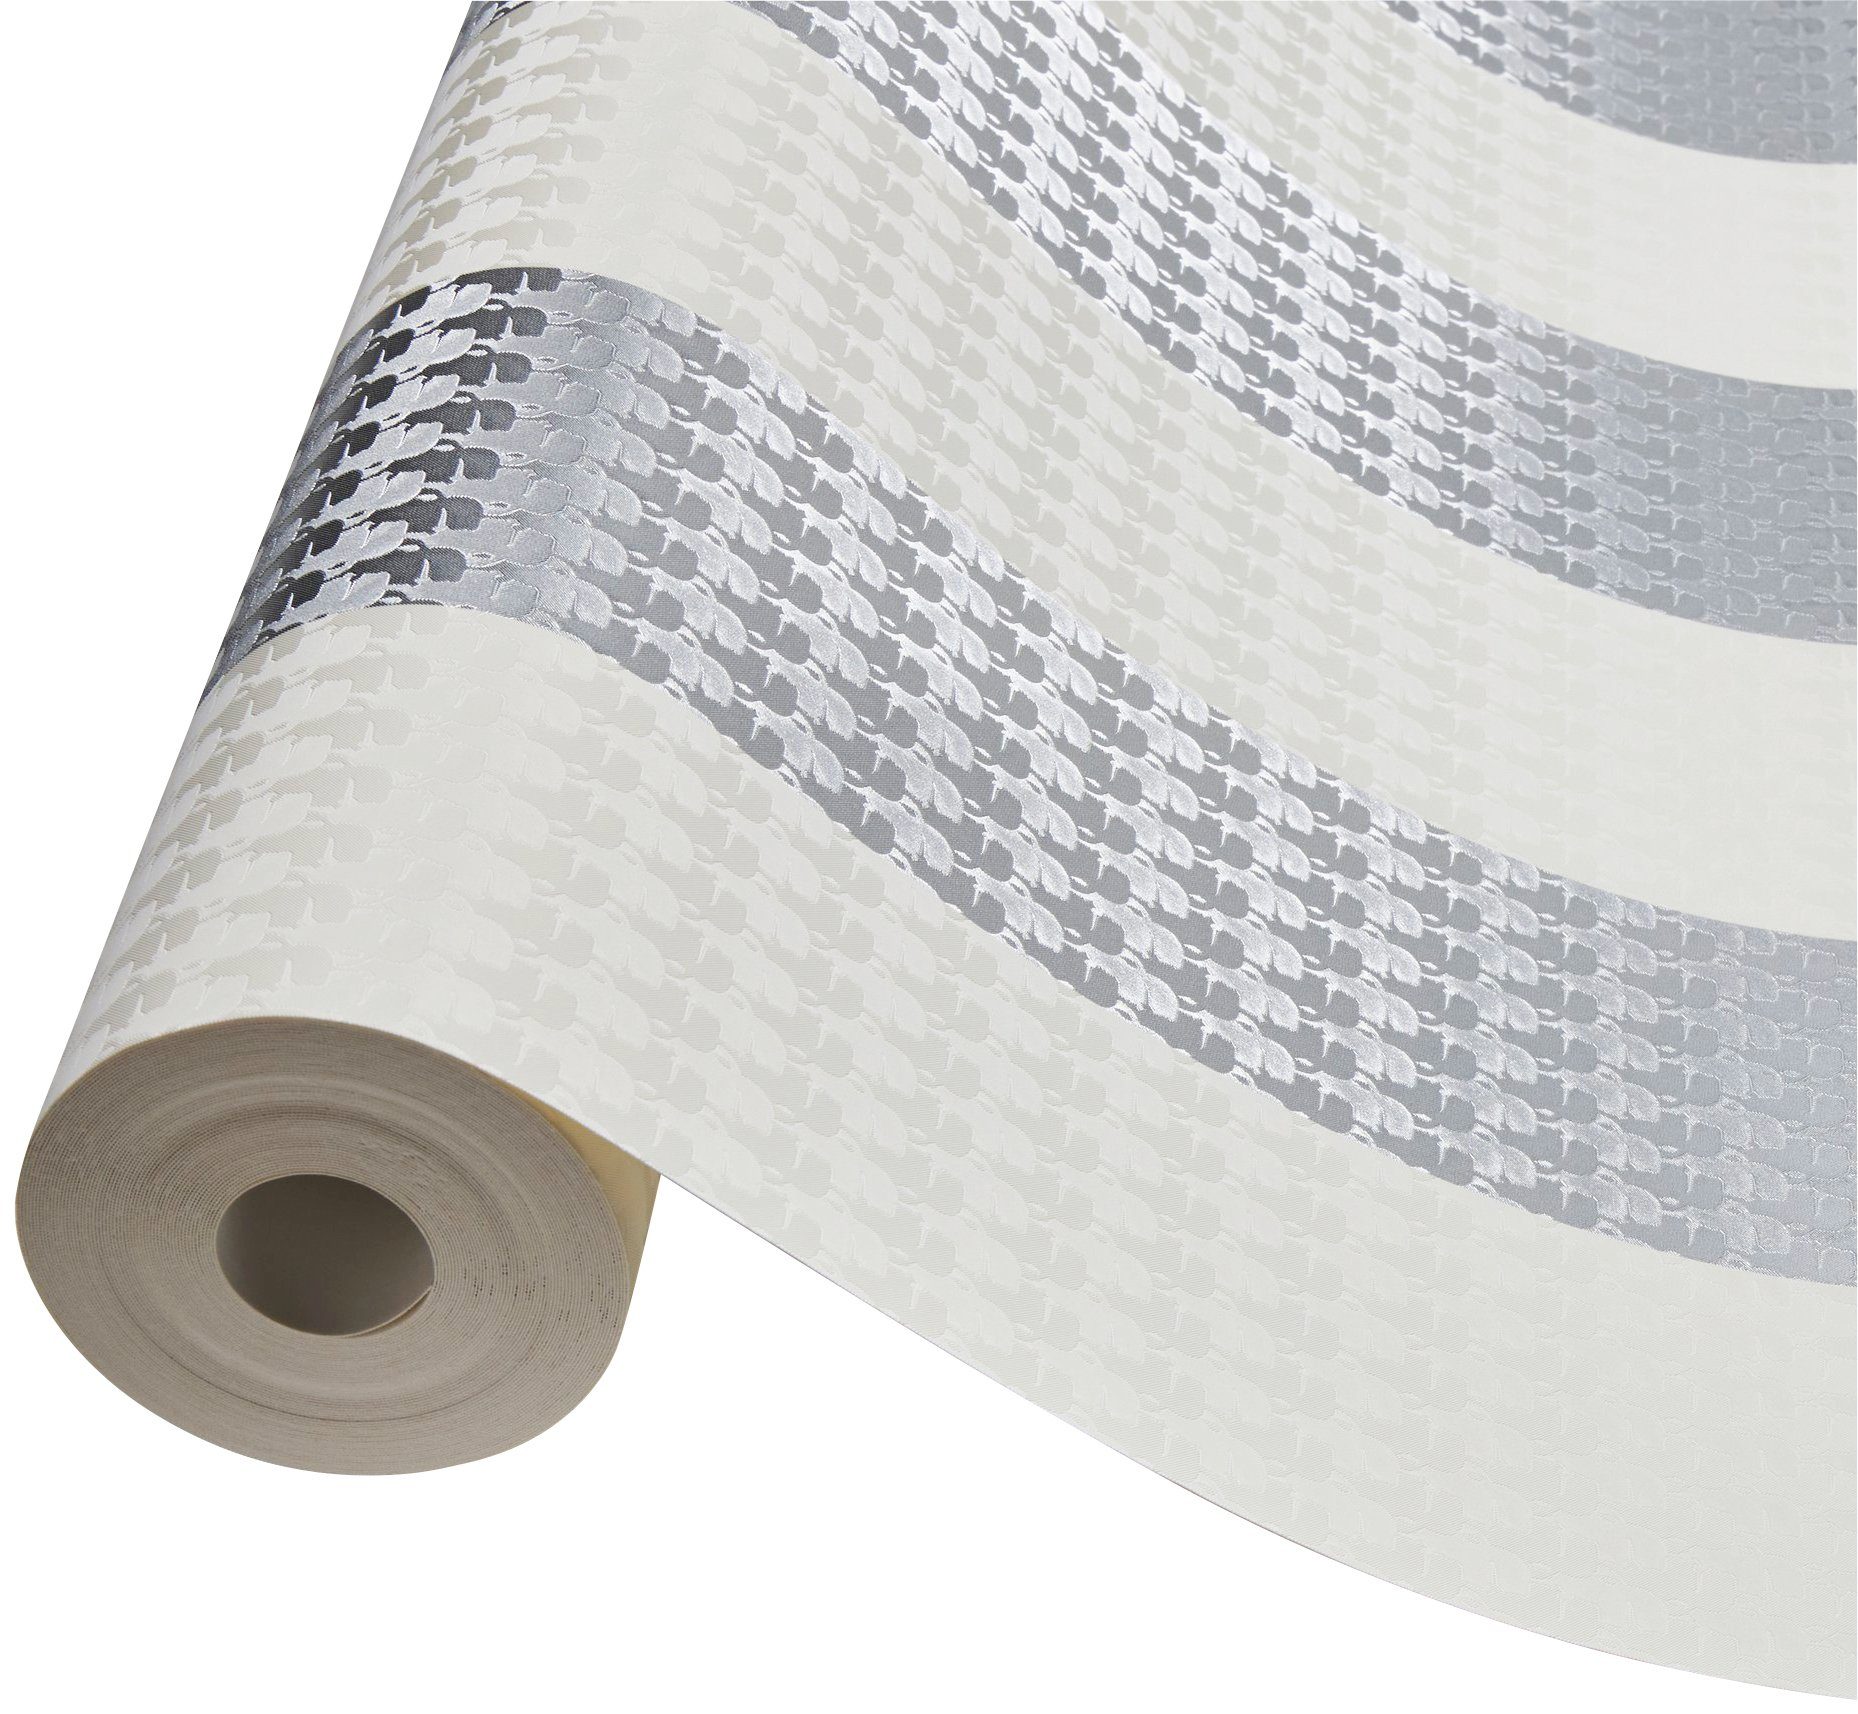 Streifen, Stripes, A.S. gestreift, Tapete Karl Paper Lagerfeld Streifentapete Création Vliestapete Architects Designer silber/weiß/grau